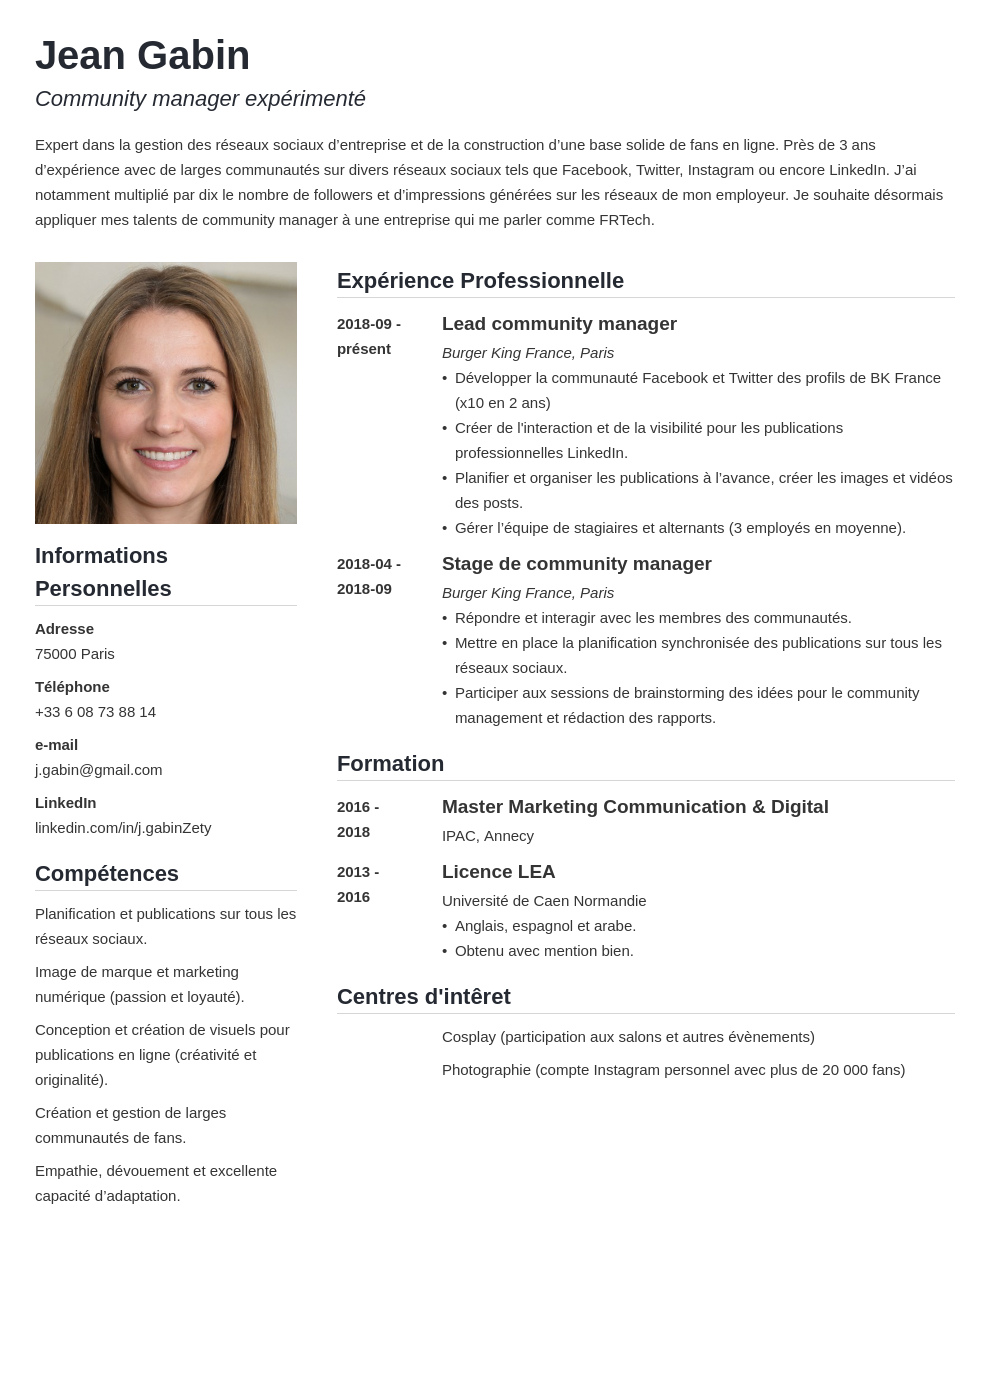 CV français  exemple pour travailler/étudier en France